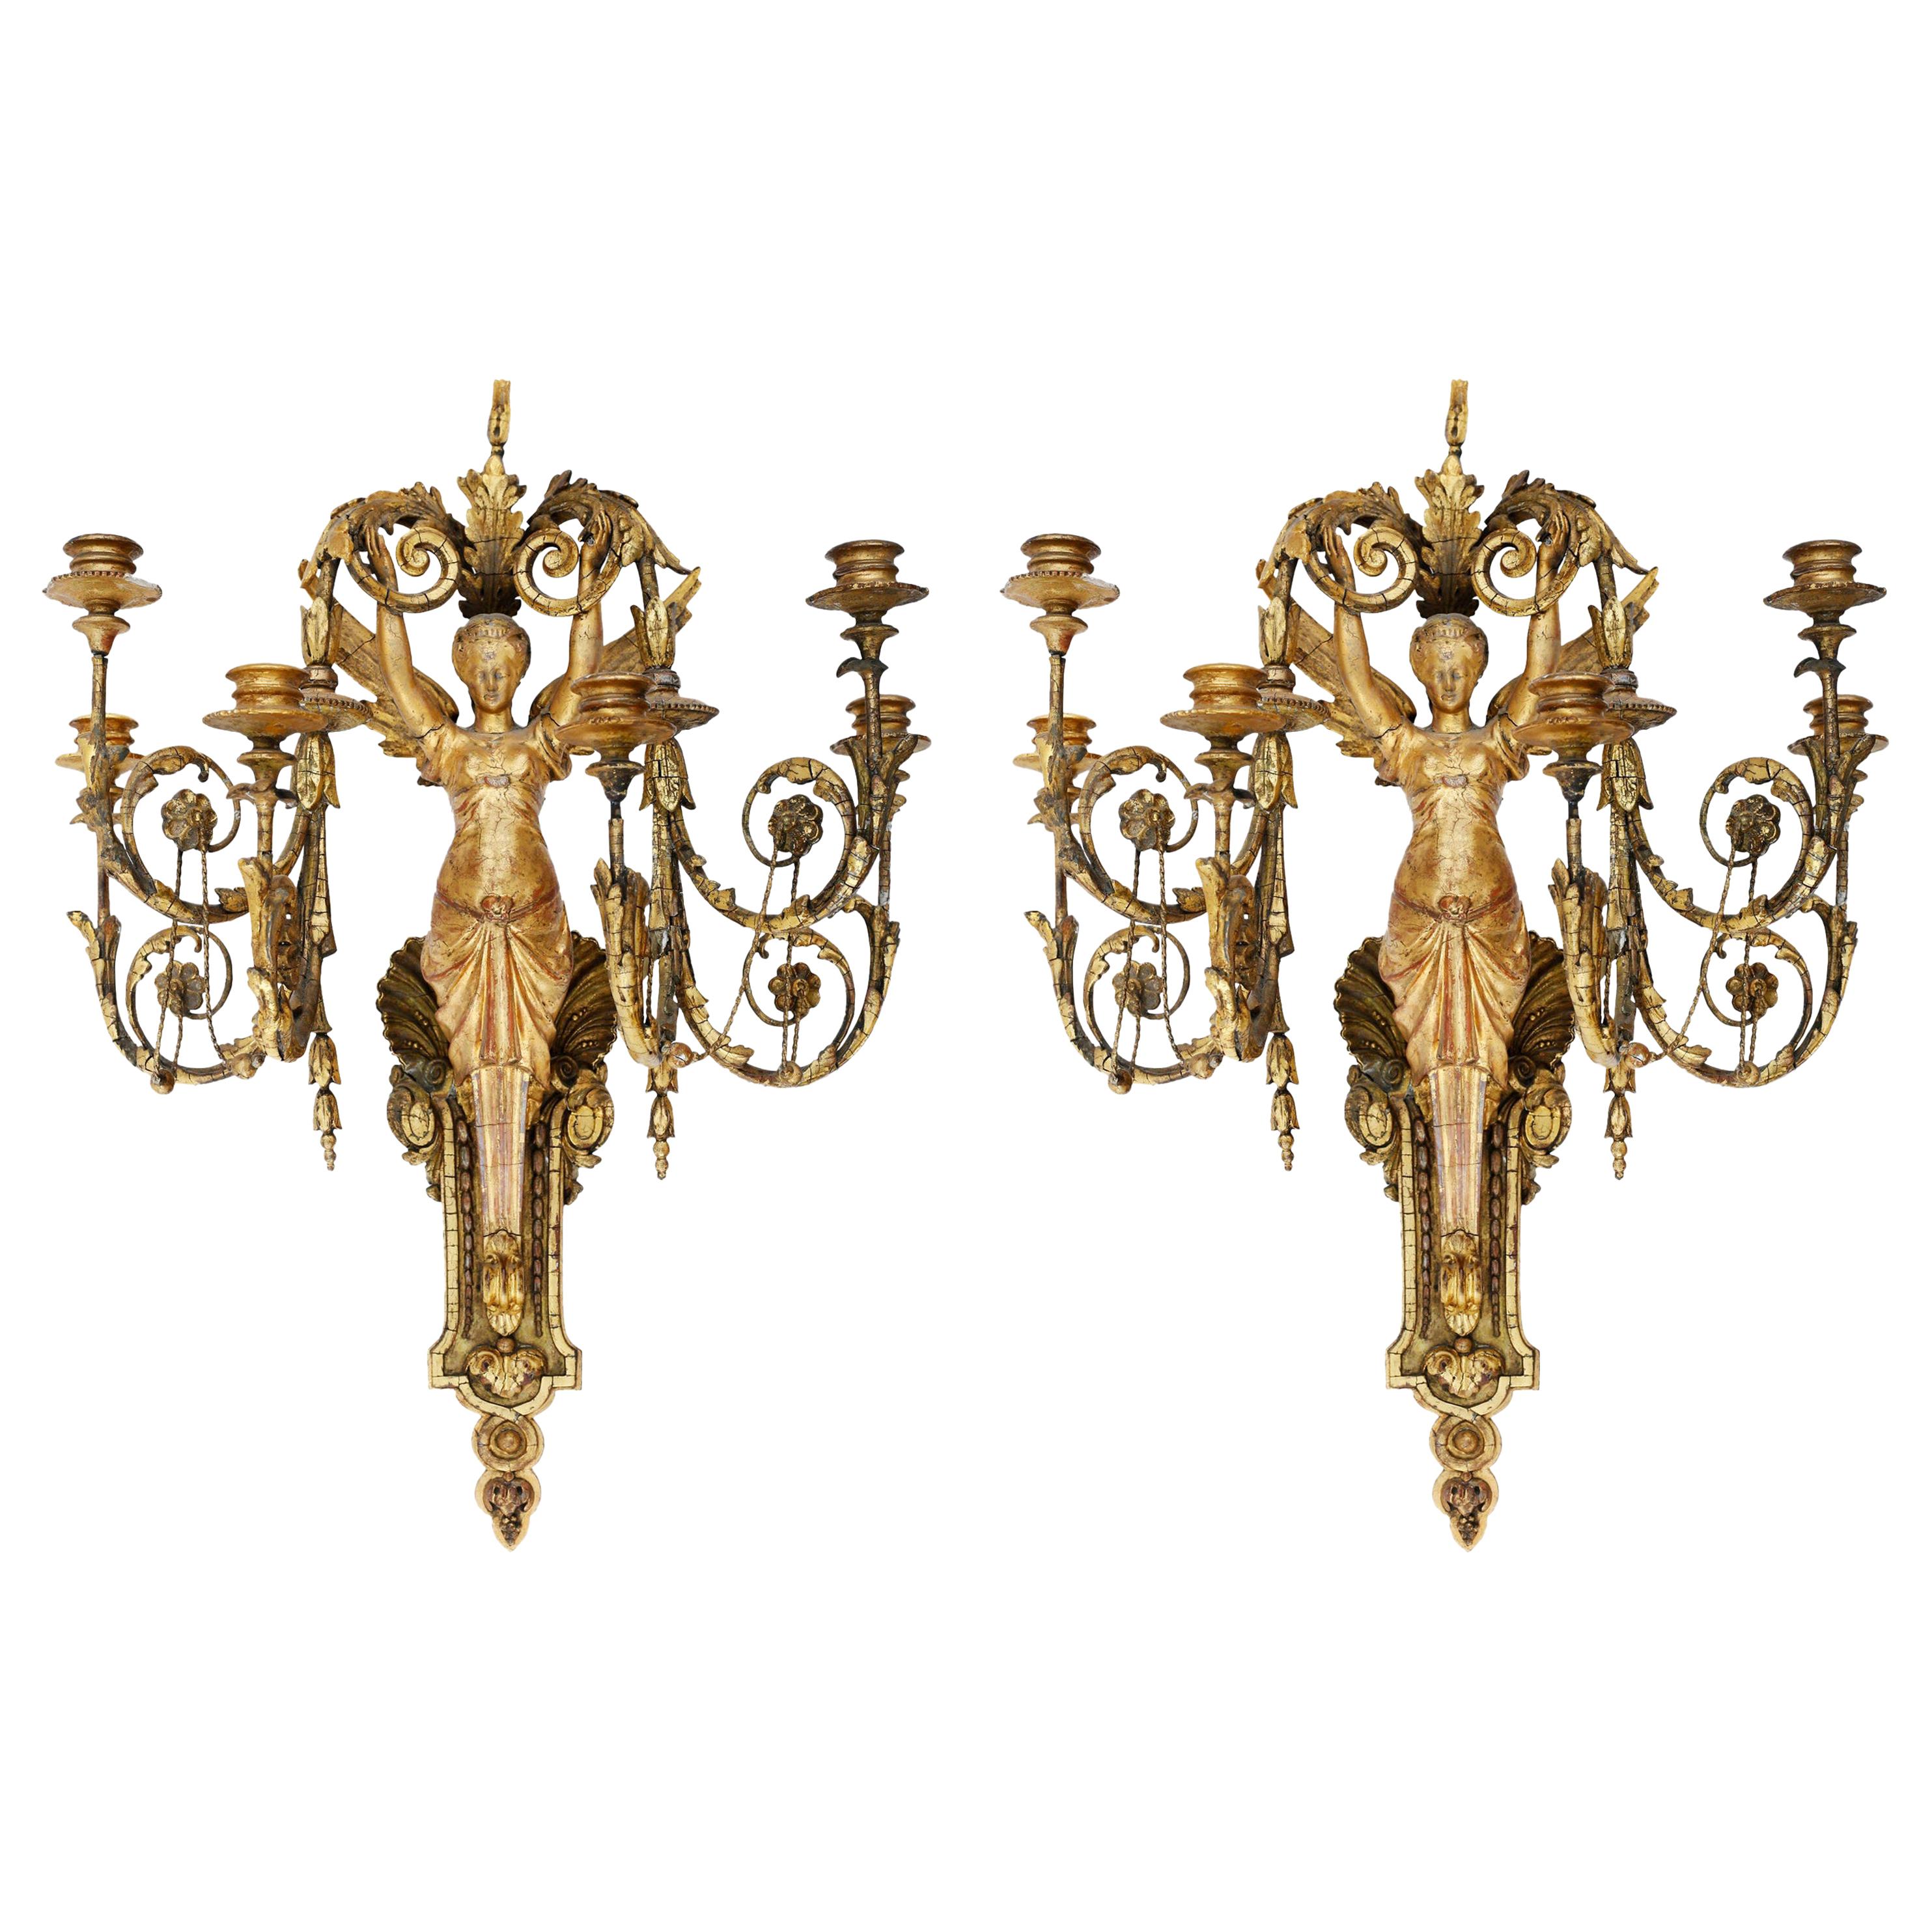 Paire d’appliques à six lumières figuratives dorées de style néoclassique italien du début du XIXe siècle